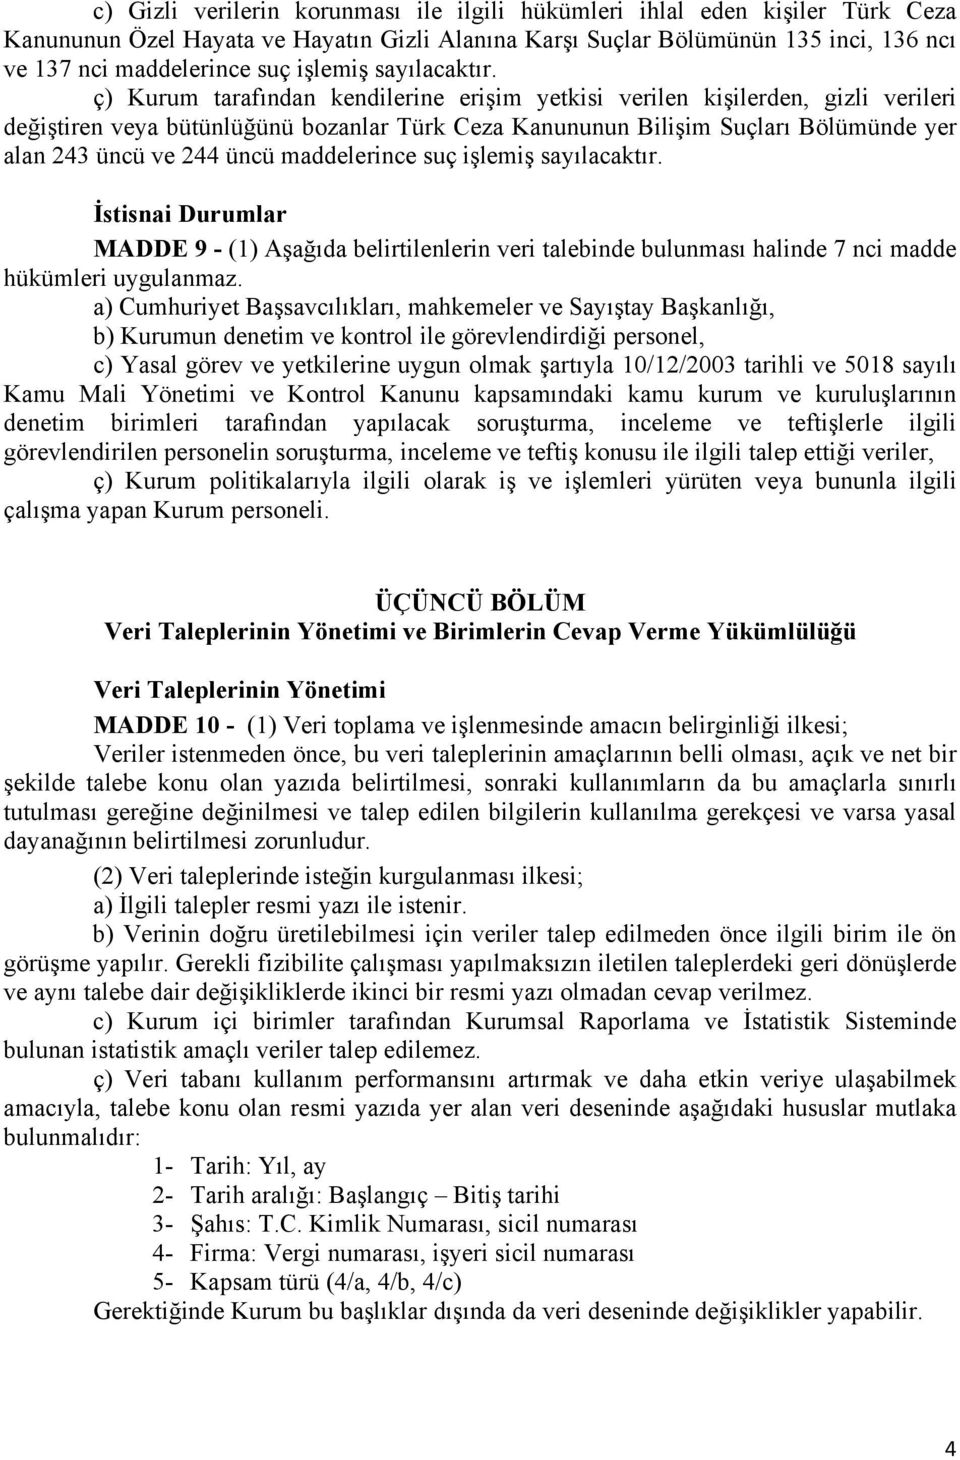 ç) Kurum tarafından kendilerine erişim yetkisi verilen kişilerden, gizli verileri değiştiren veya bütünlüğünü bozanlar Türk Ceza Kanununun Bilişim Suçları Bölümünde yer alan 243 üncü ve 244 üncü